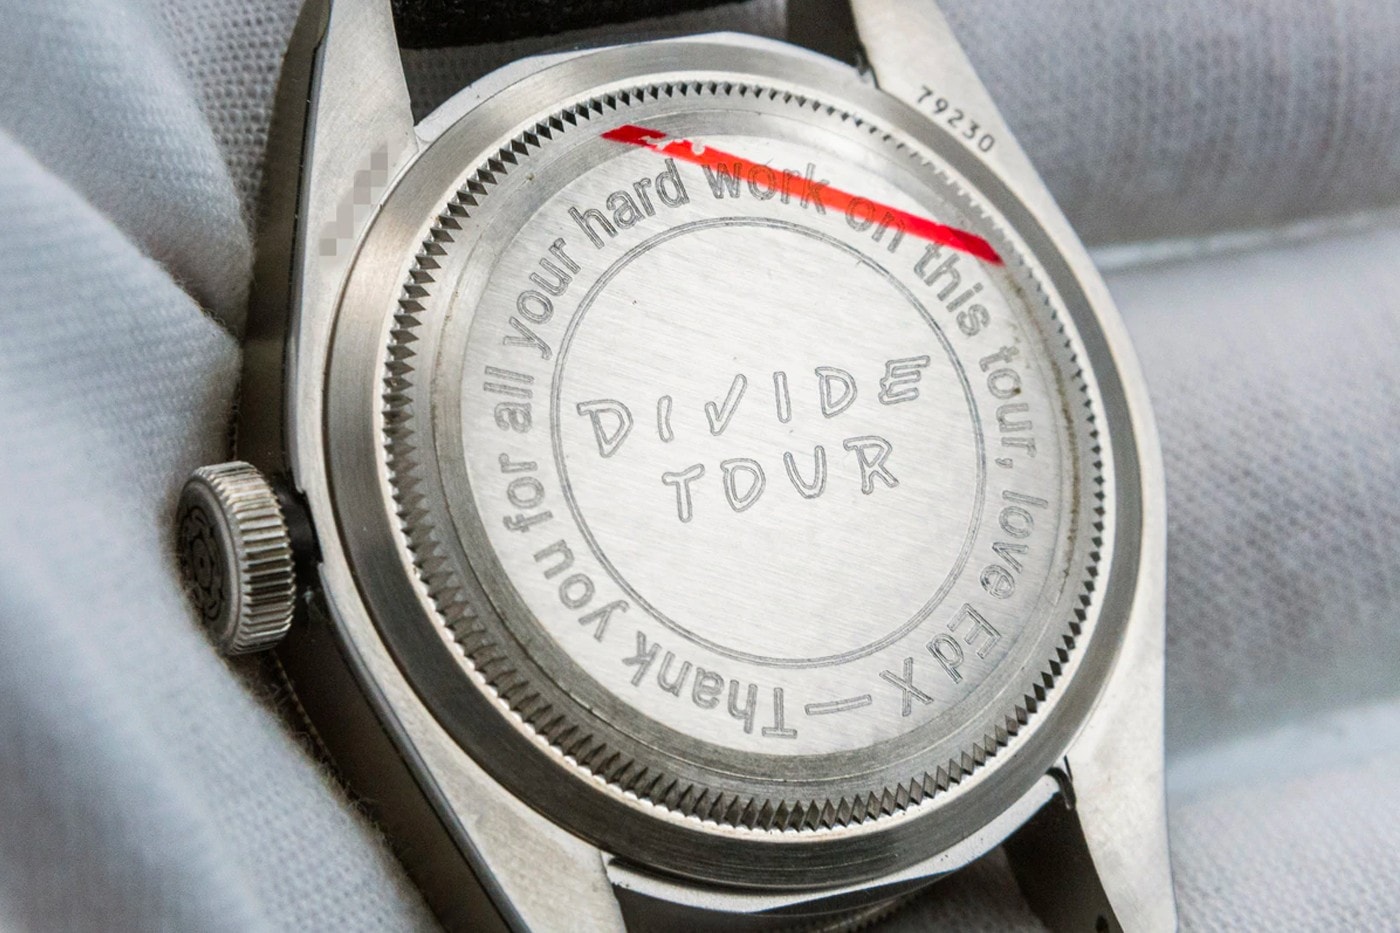 Ed Sheeran《Divide》巡迴演唱會 Tudor Black Bay 定製腕錶上架發售